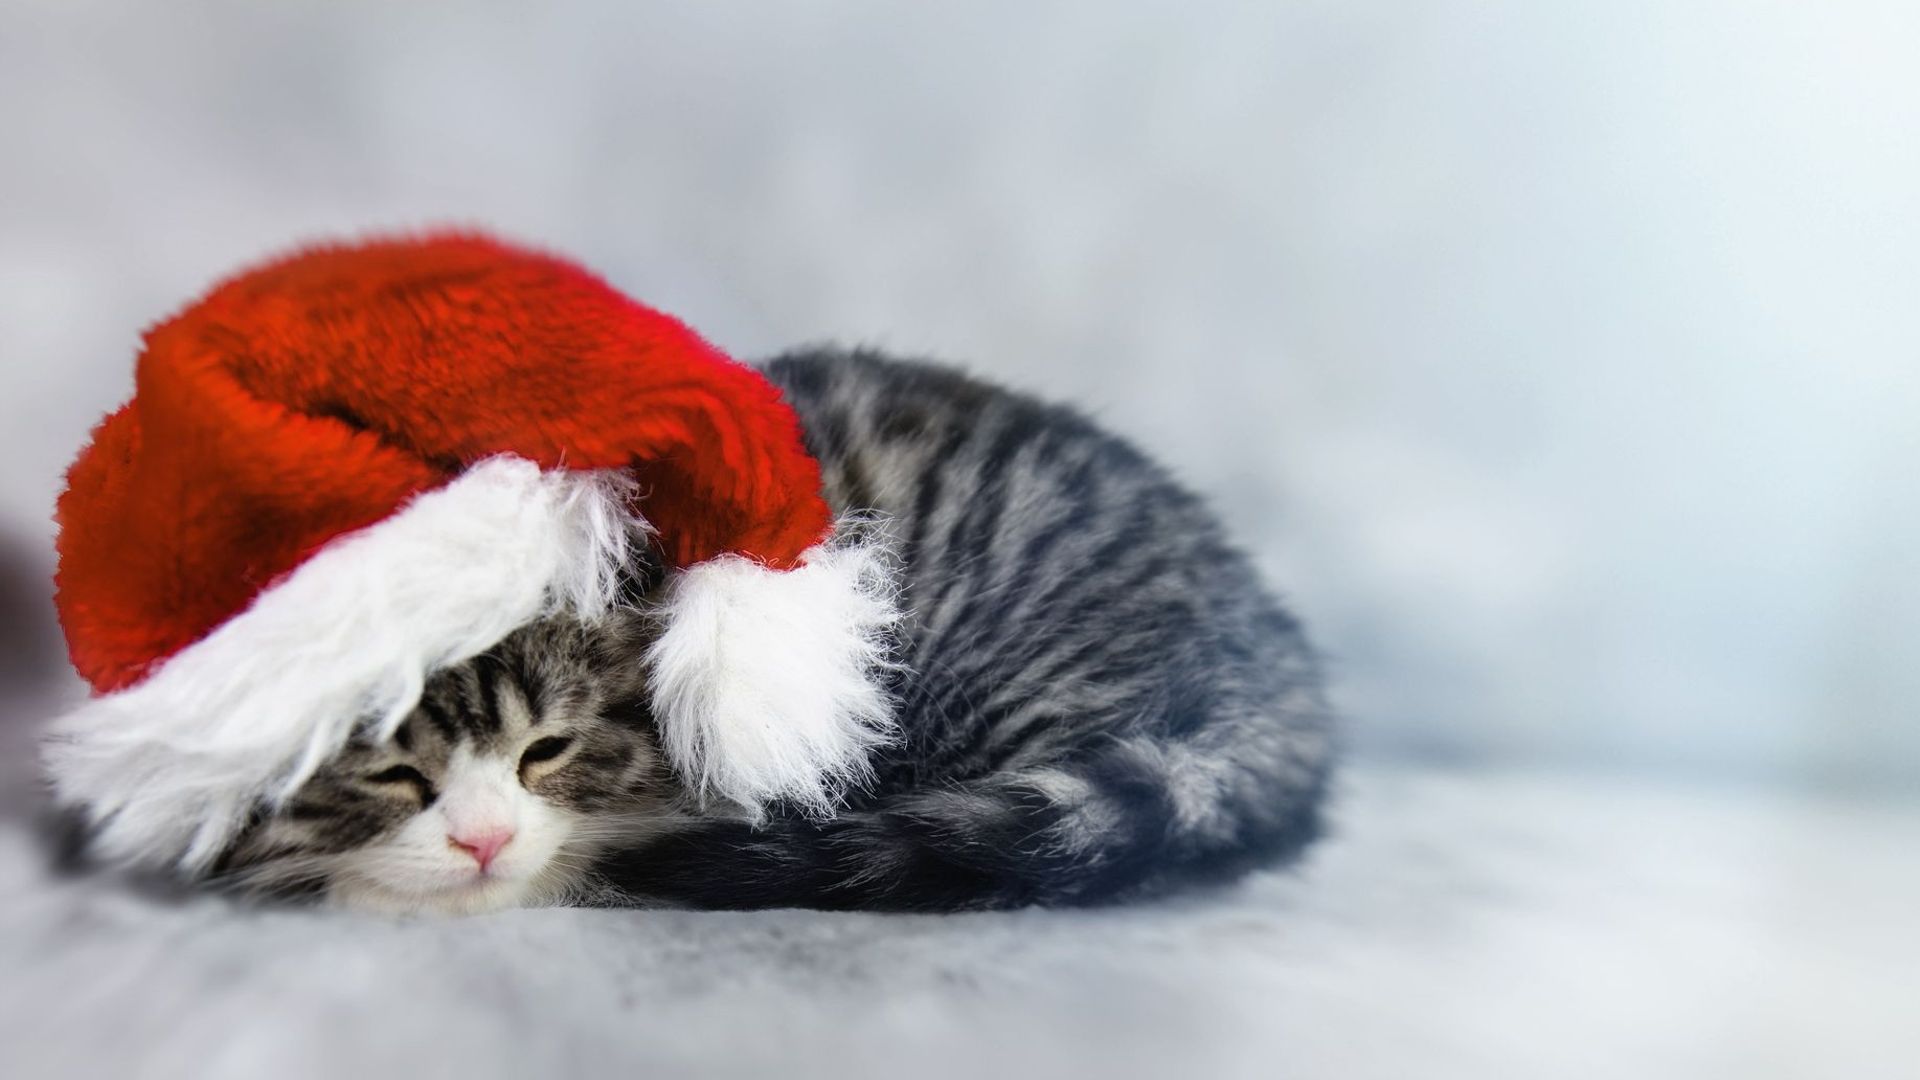 Little Kitty Wearing Santa's Hat. Copy Space.